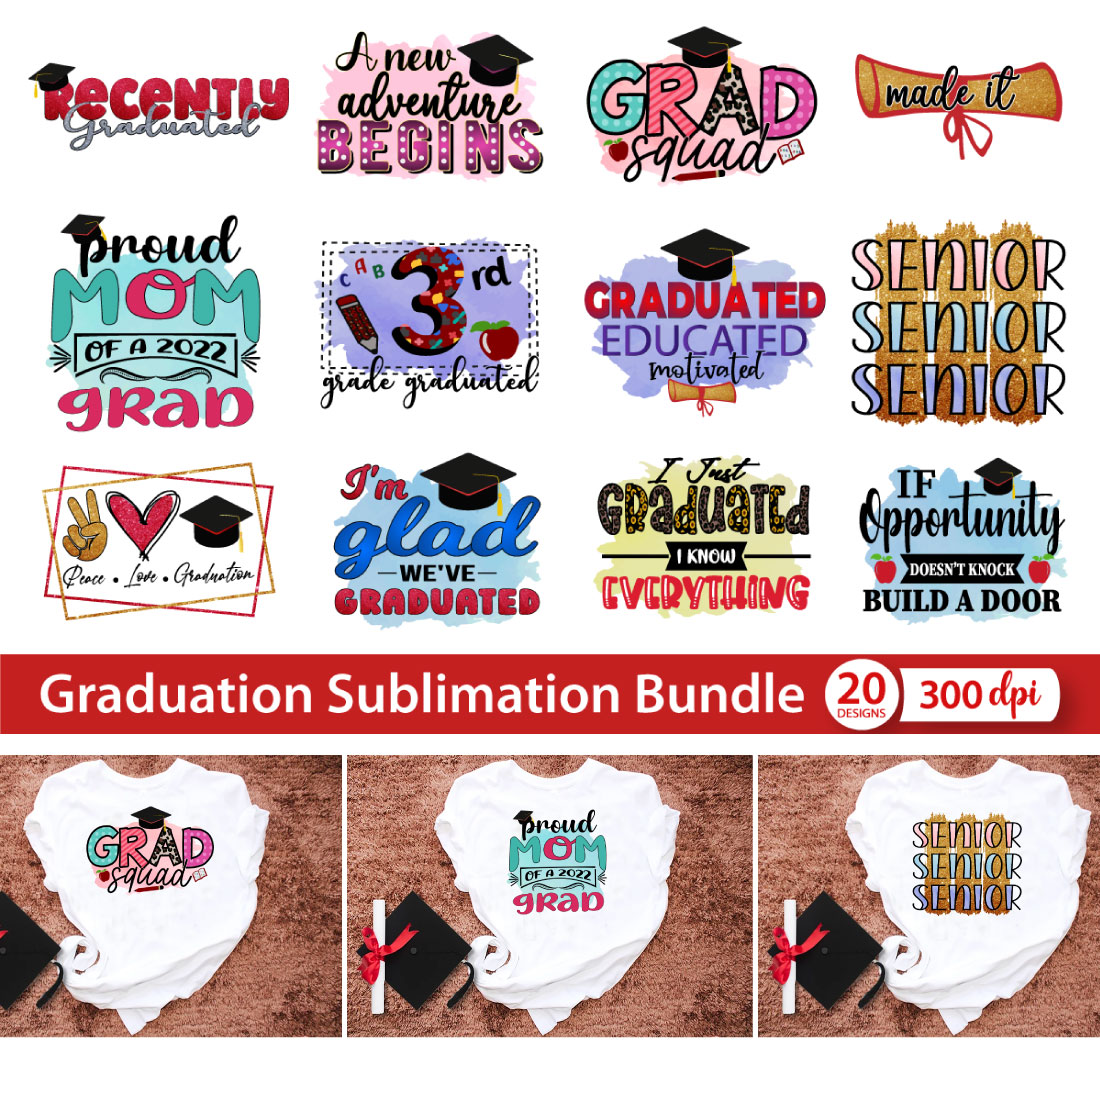 Graduation Sublimation Bundle 20 PNG cover image.